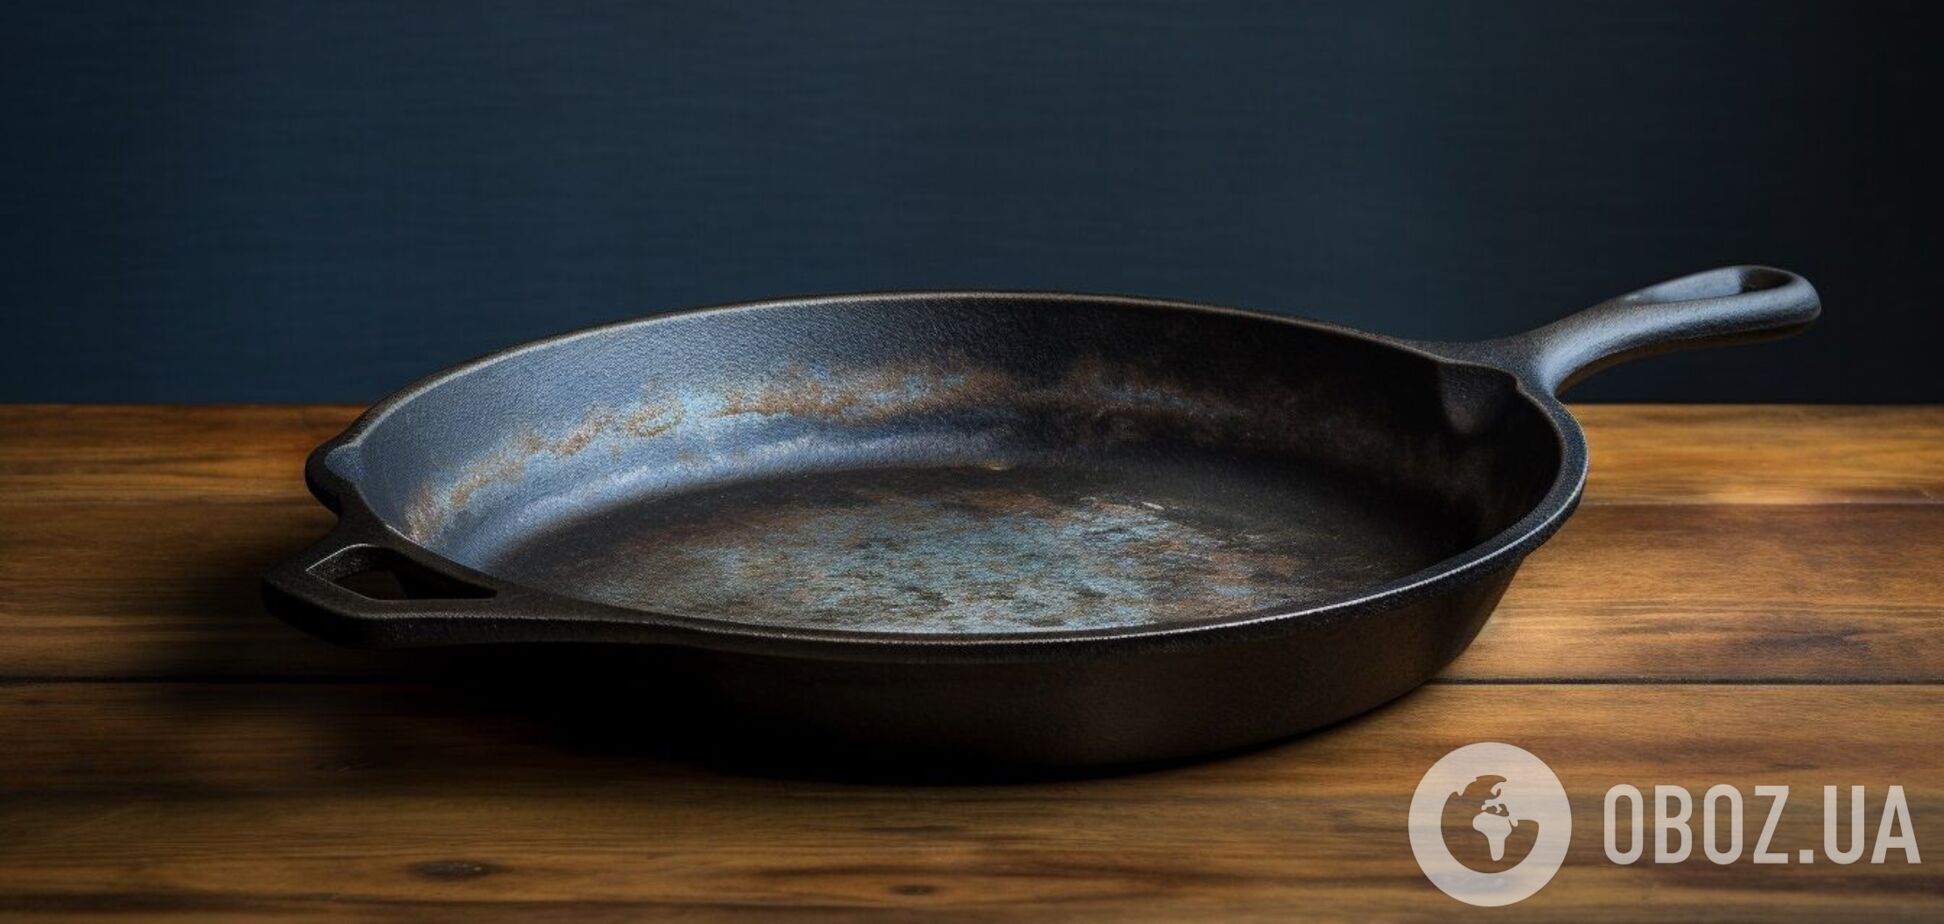 Як легко відмити навіть найбруднішу чавунну сковороду: усе необхідне уже є під рукою